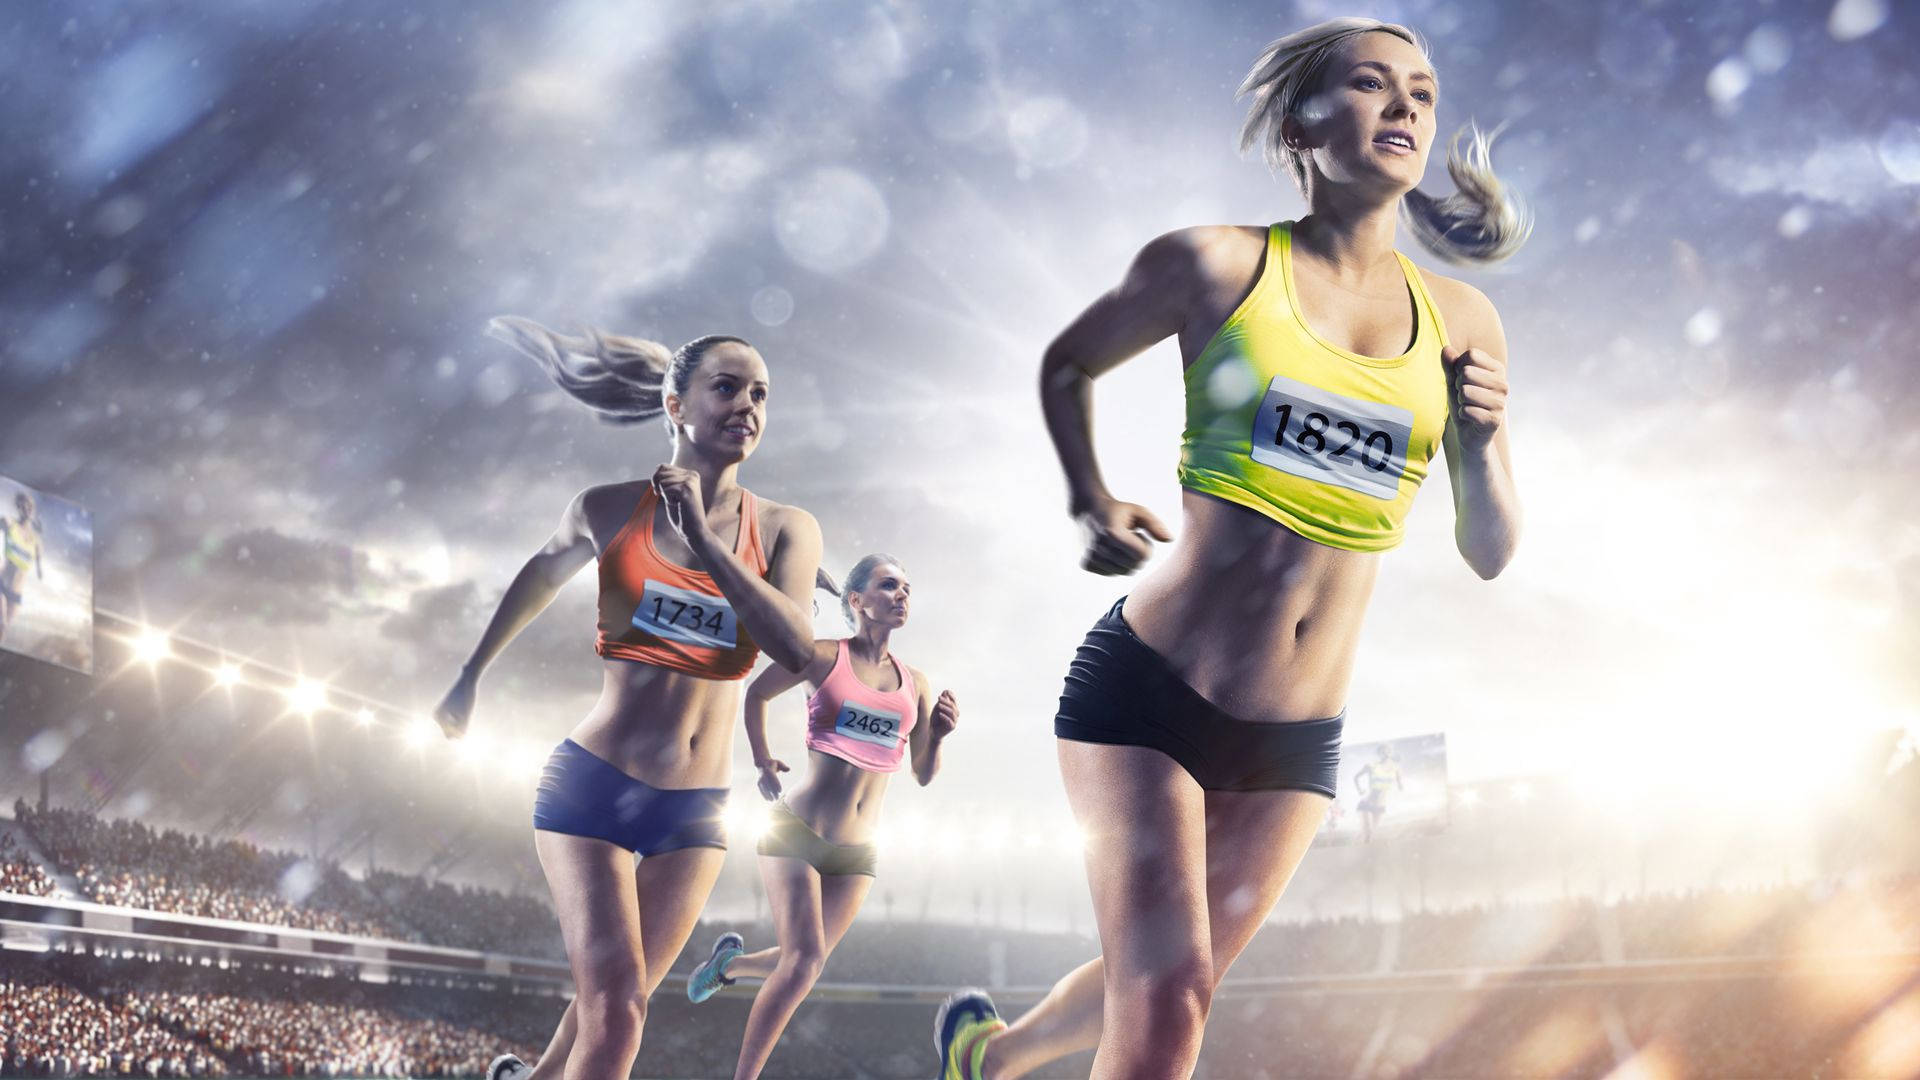 Women's Running Athletics Wallpaper